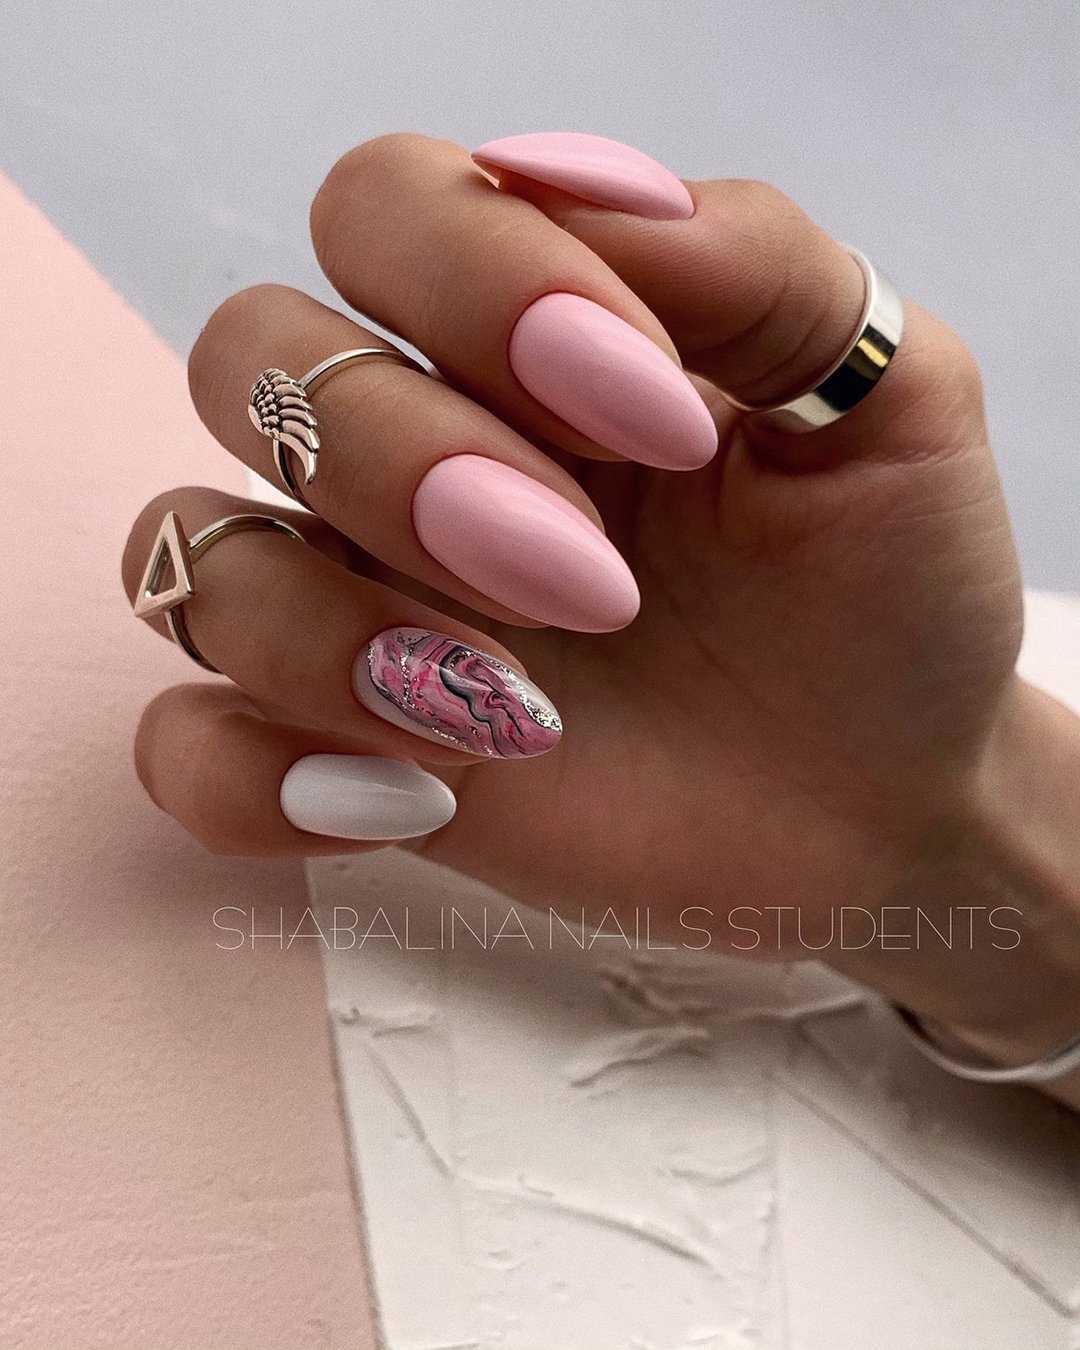 wedding nails design pink white with abstract shabalina_nails